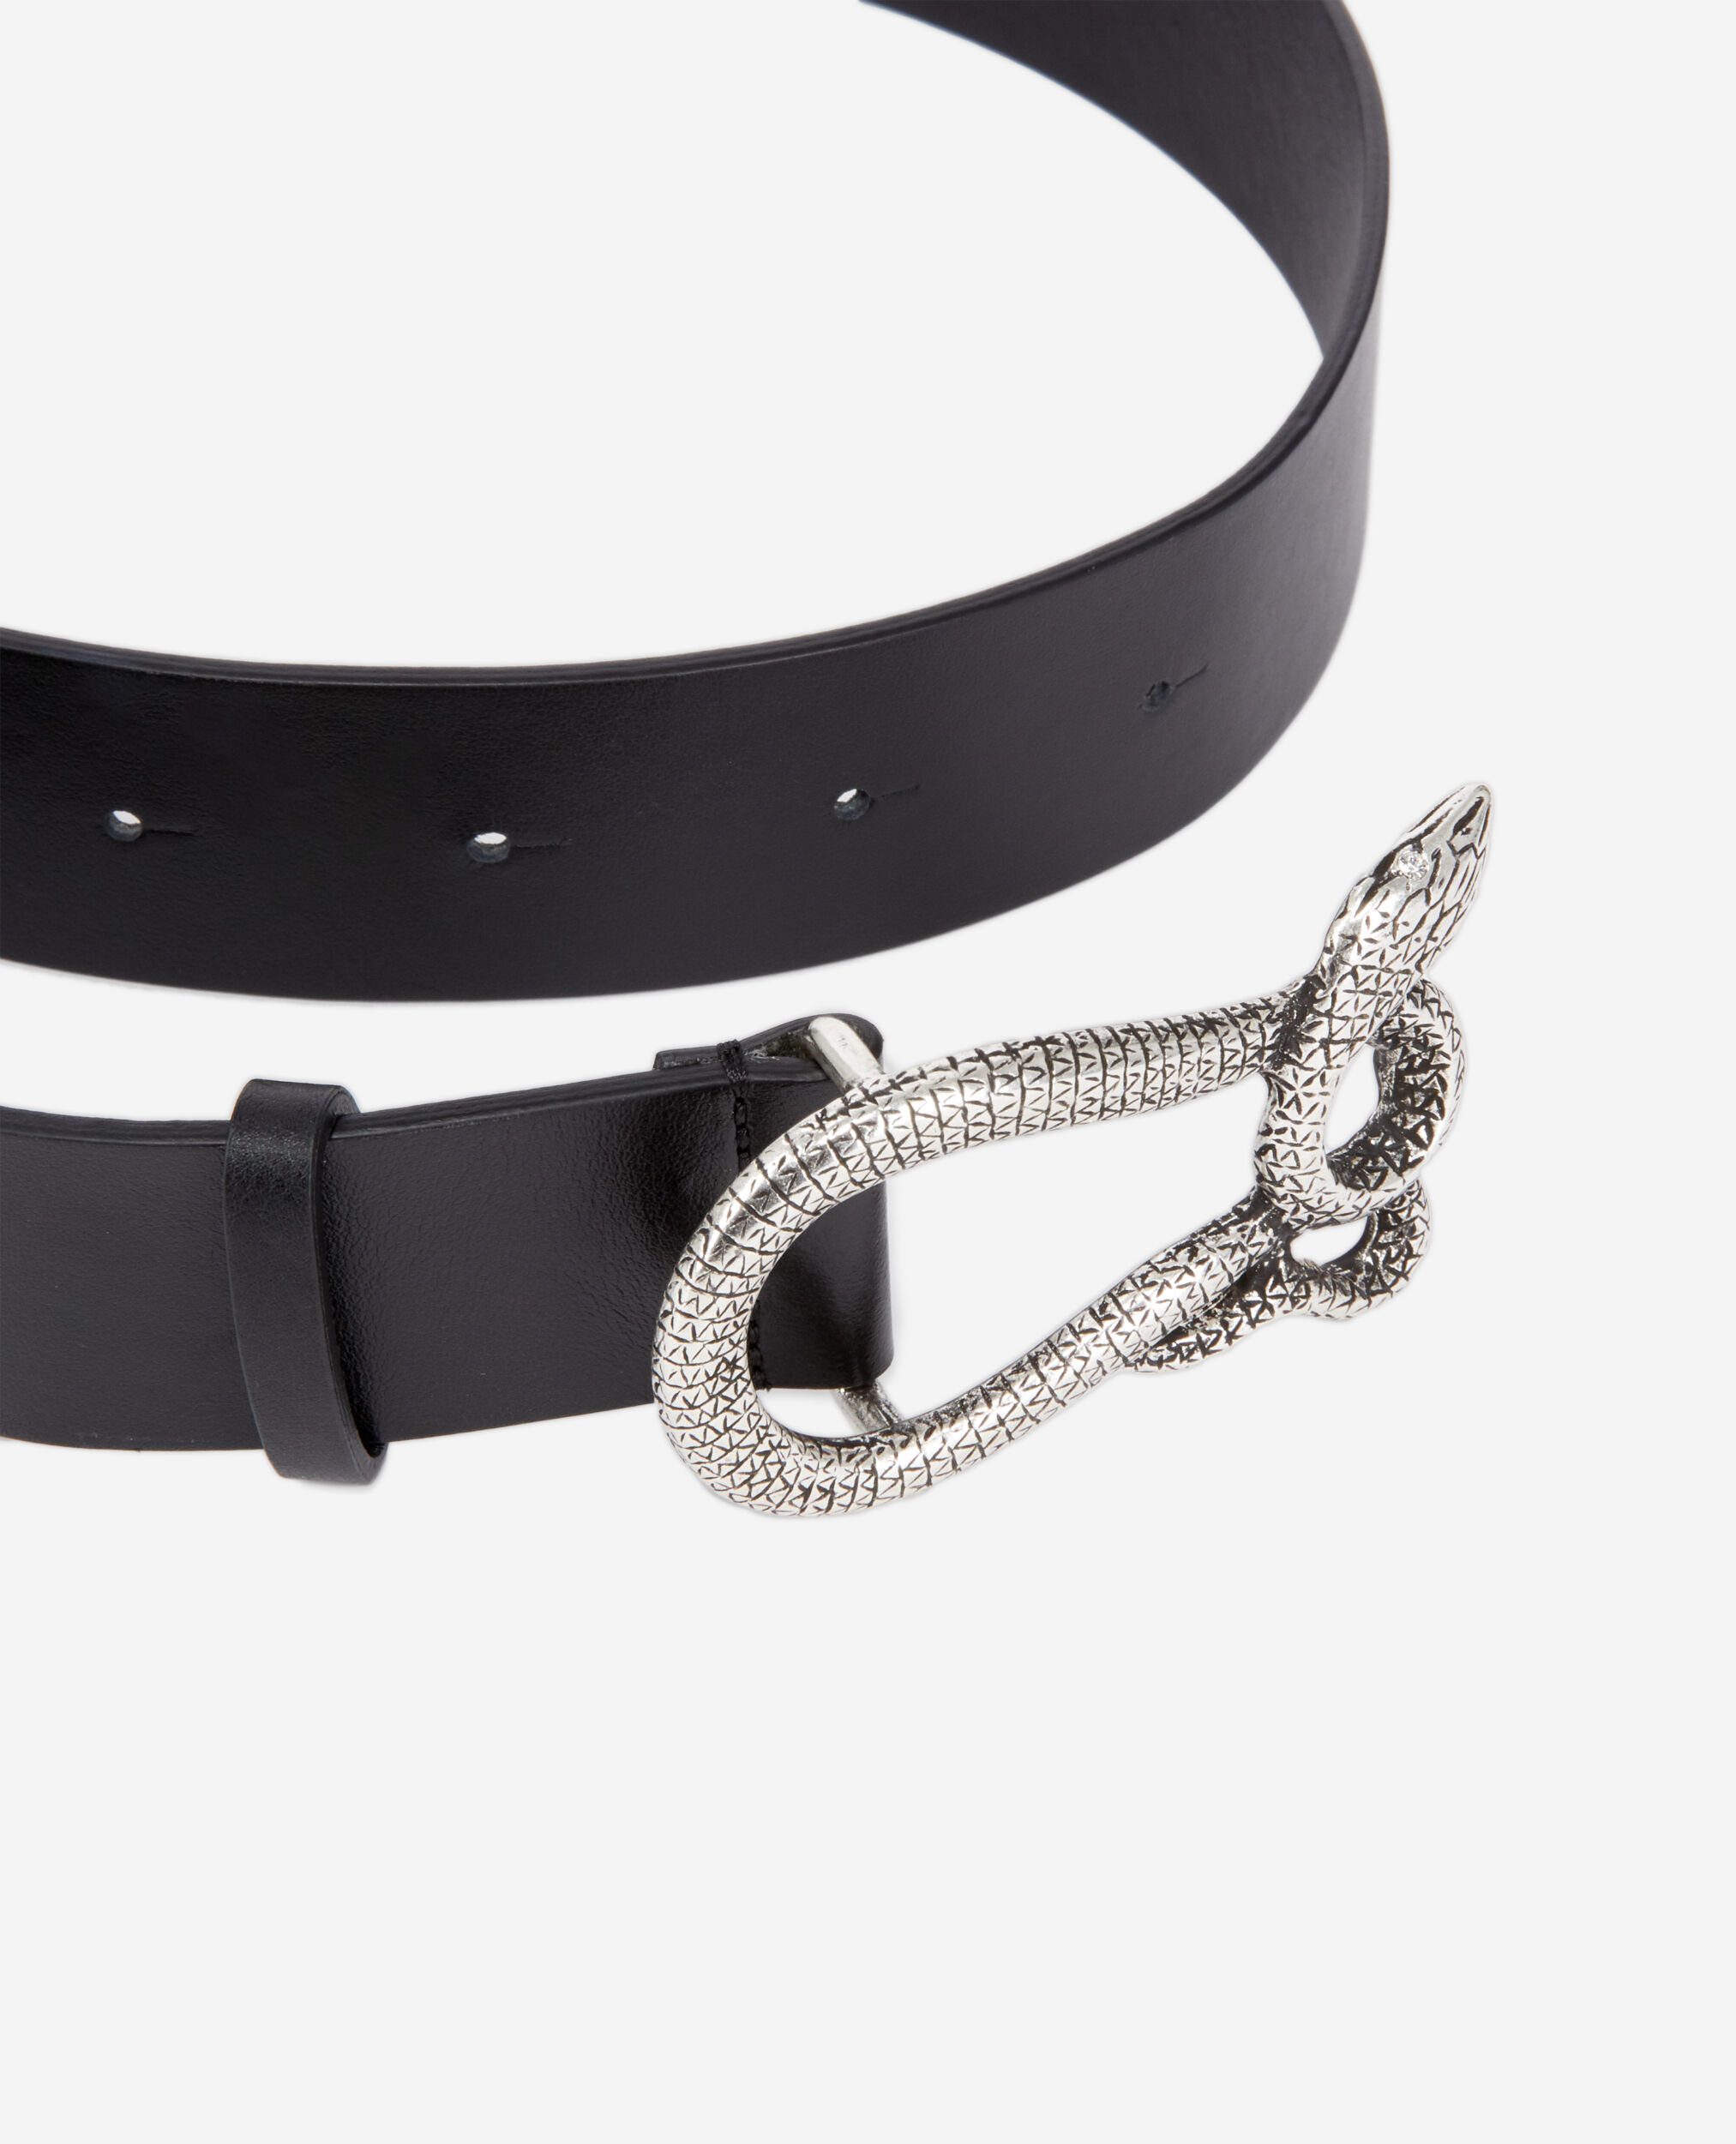 Cinturón piel negro hebilla serpiente, BLACK, hi-res image number null